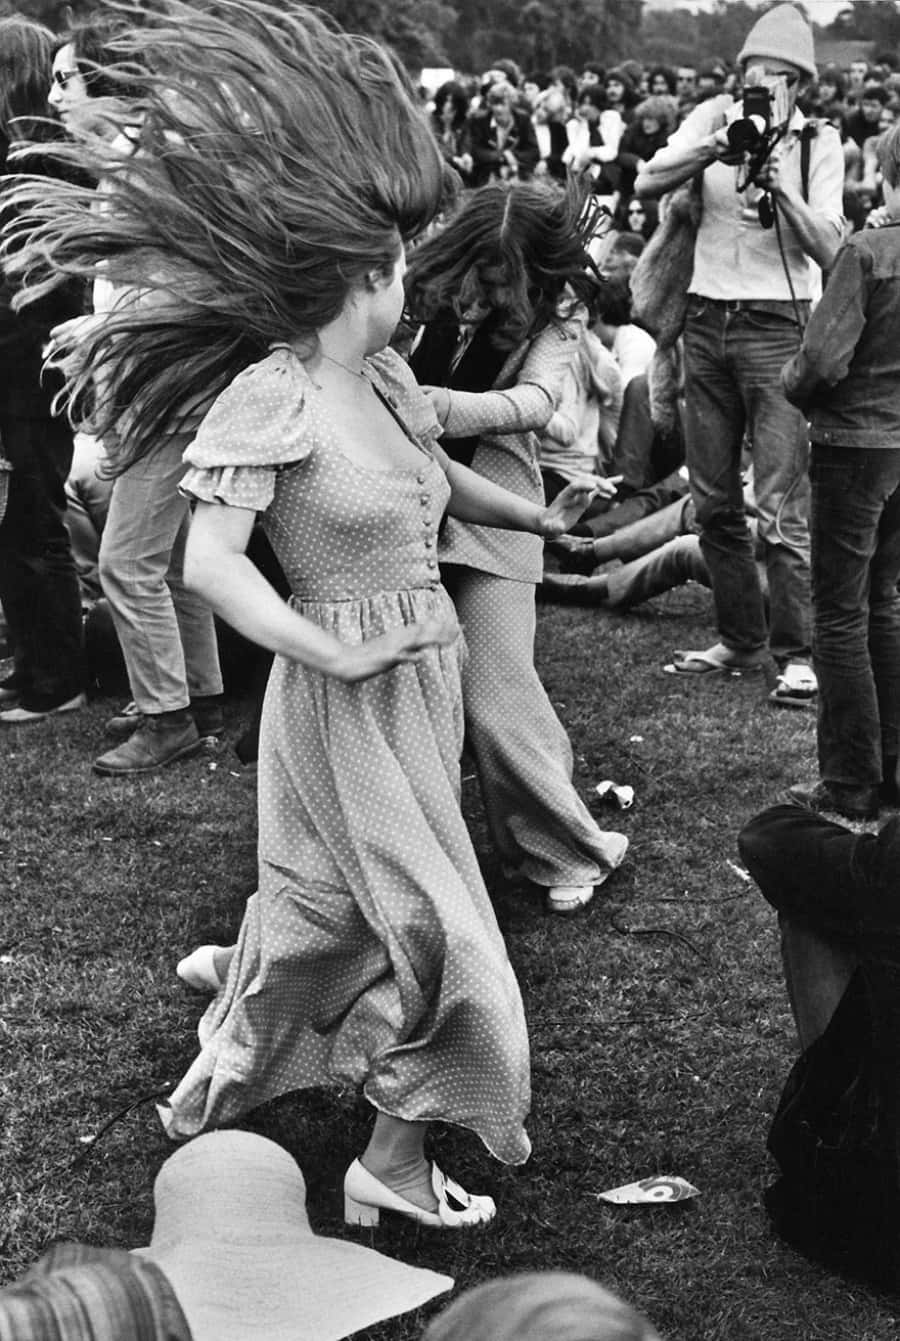 Unosguardo All'iconico Festival Musicale Di Woodstock Del 1969